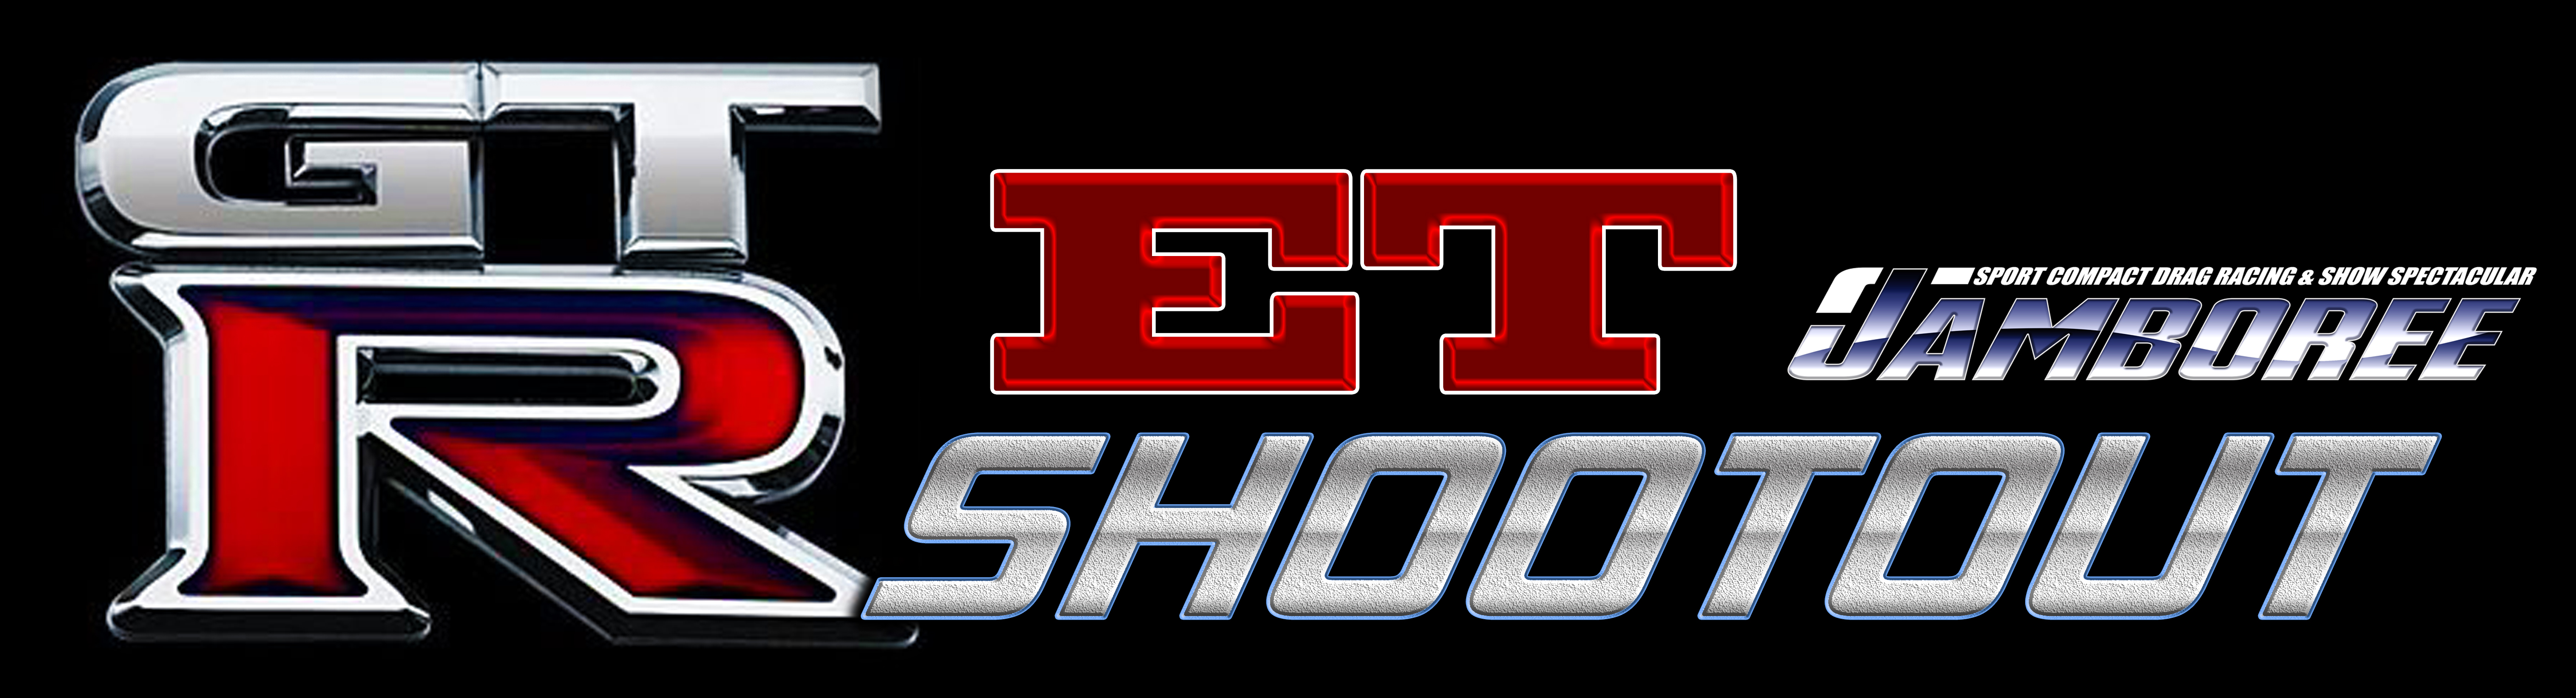 GTR ET Shootout